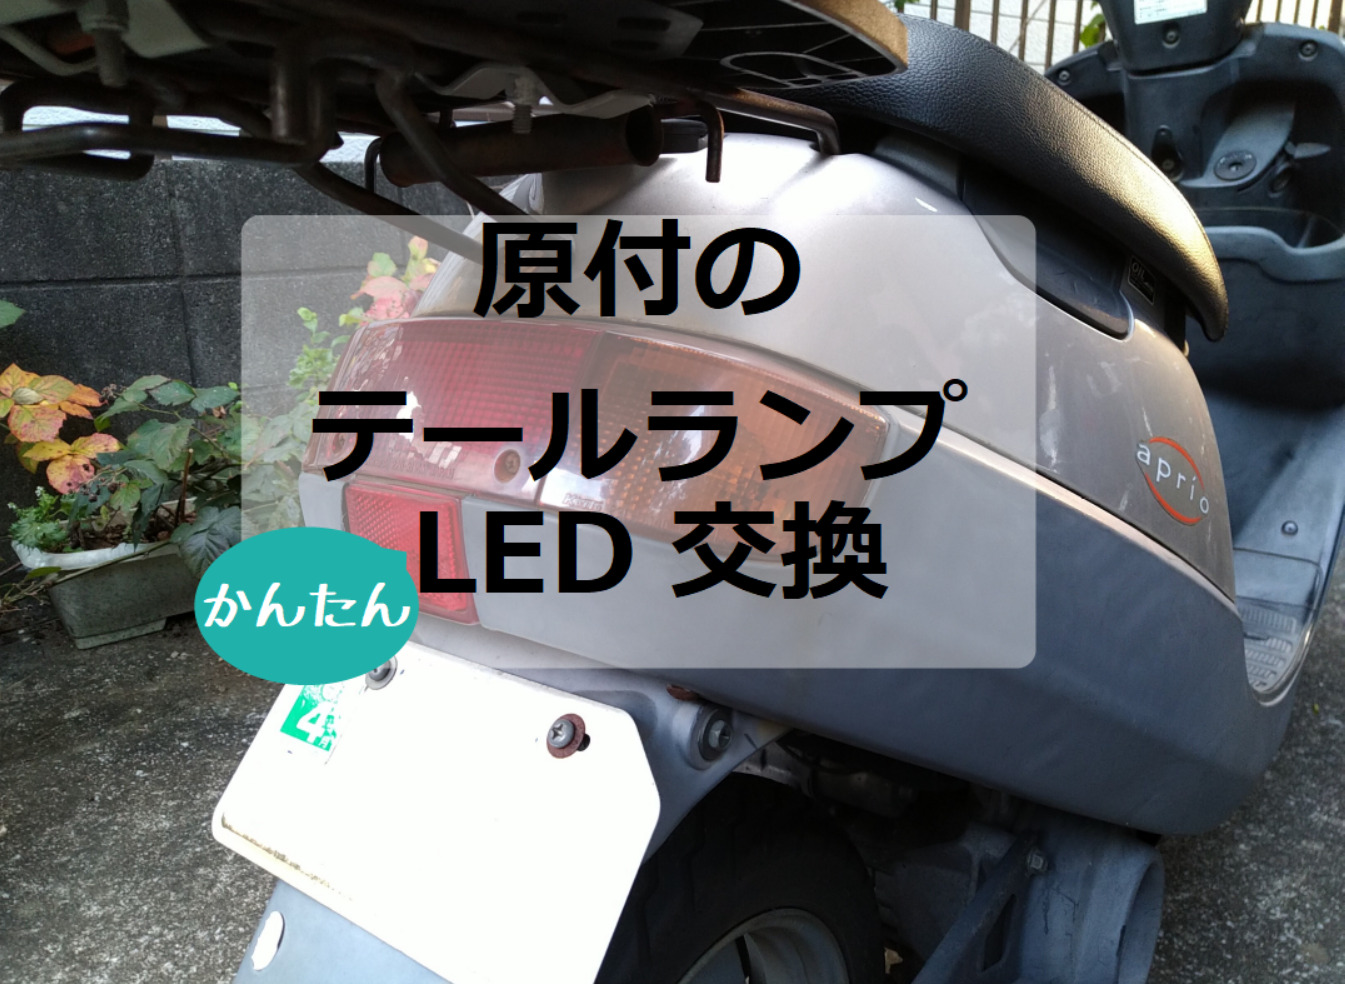 数々のアワードを受賞】 rewrite-storeテールライト バイクのトライクのための統合された指標があるLEDリアブレーキテールライト LED  Rear Brake Tail Light with Integrated Indicators fo